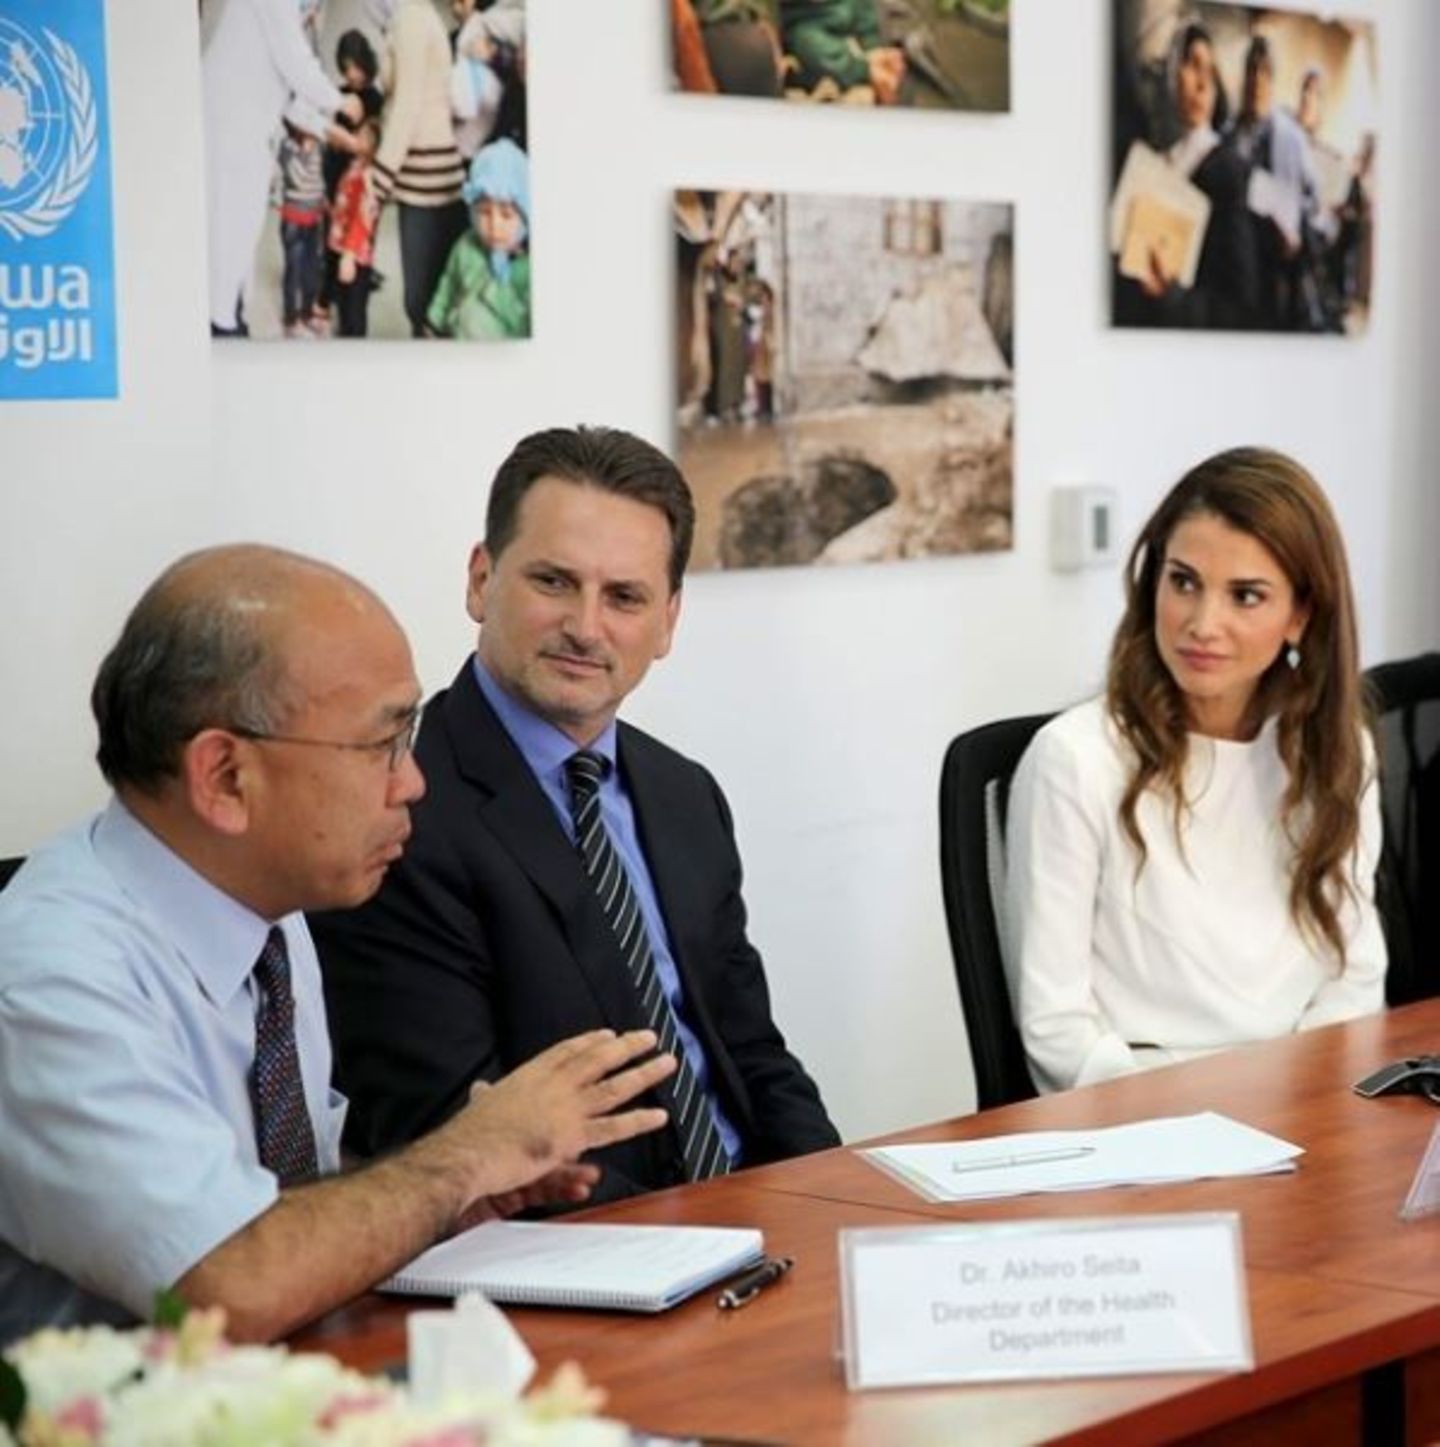 27. Juli 2014: Königin Rania von Jordanien ist in Gespräche mit Gesundheitsbeauftragten zur Lage in Gaza vertieft.